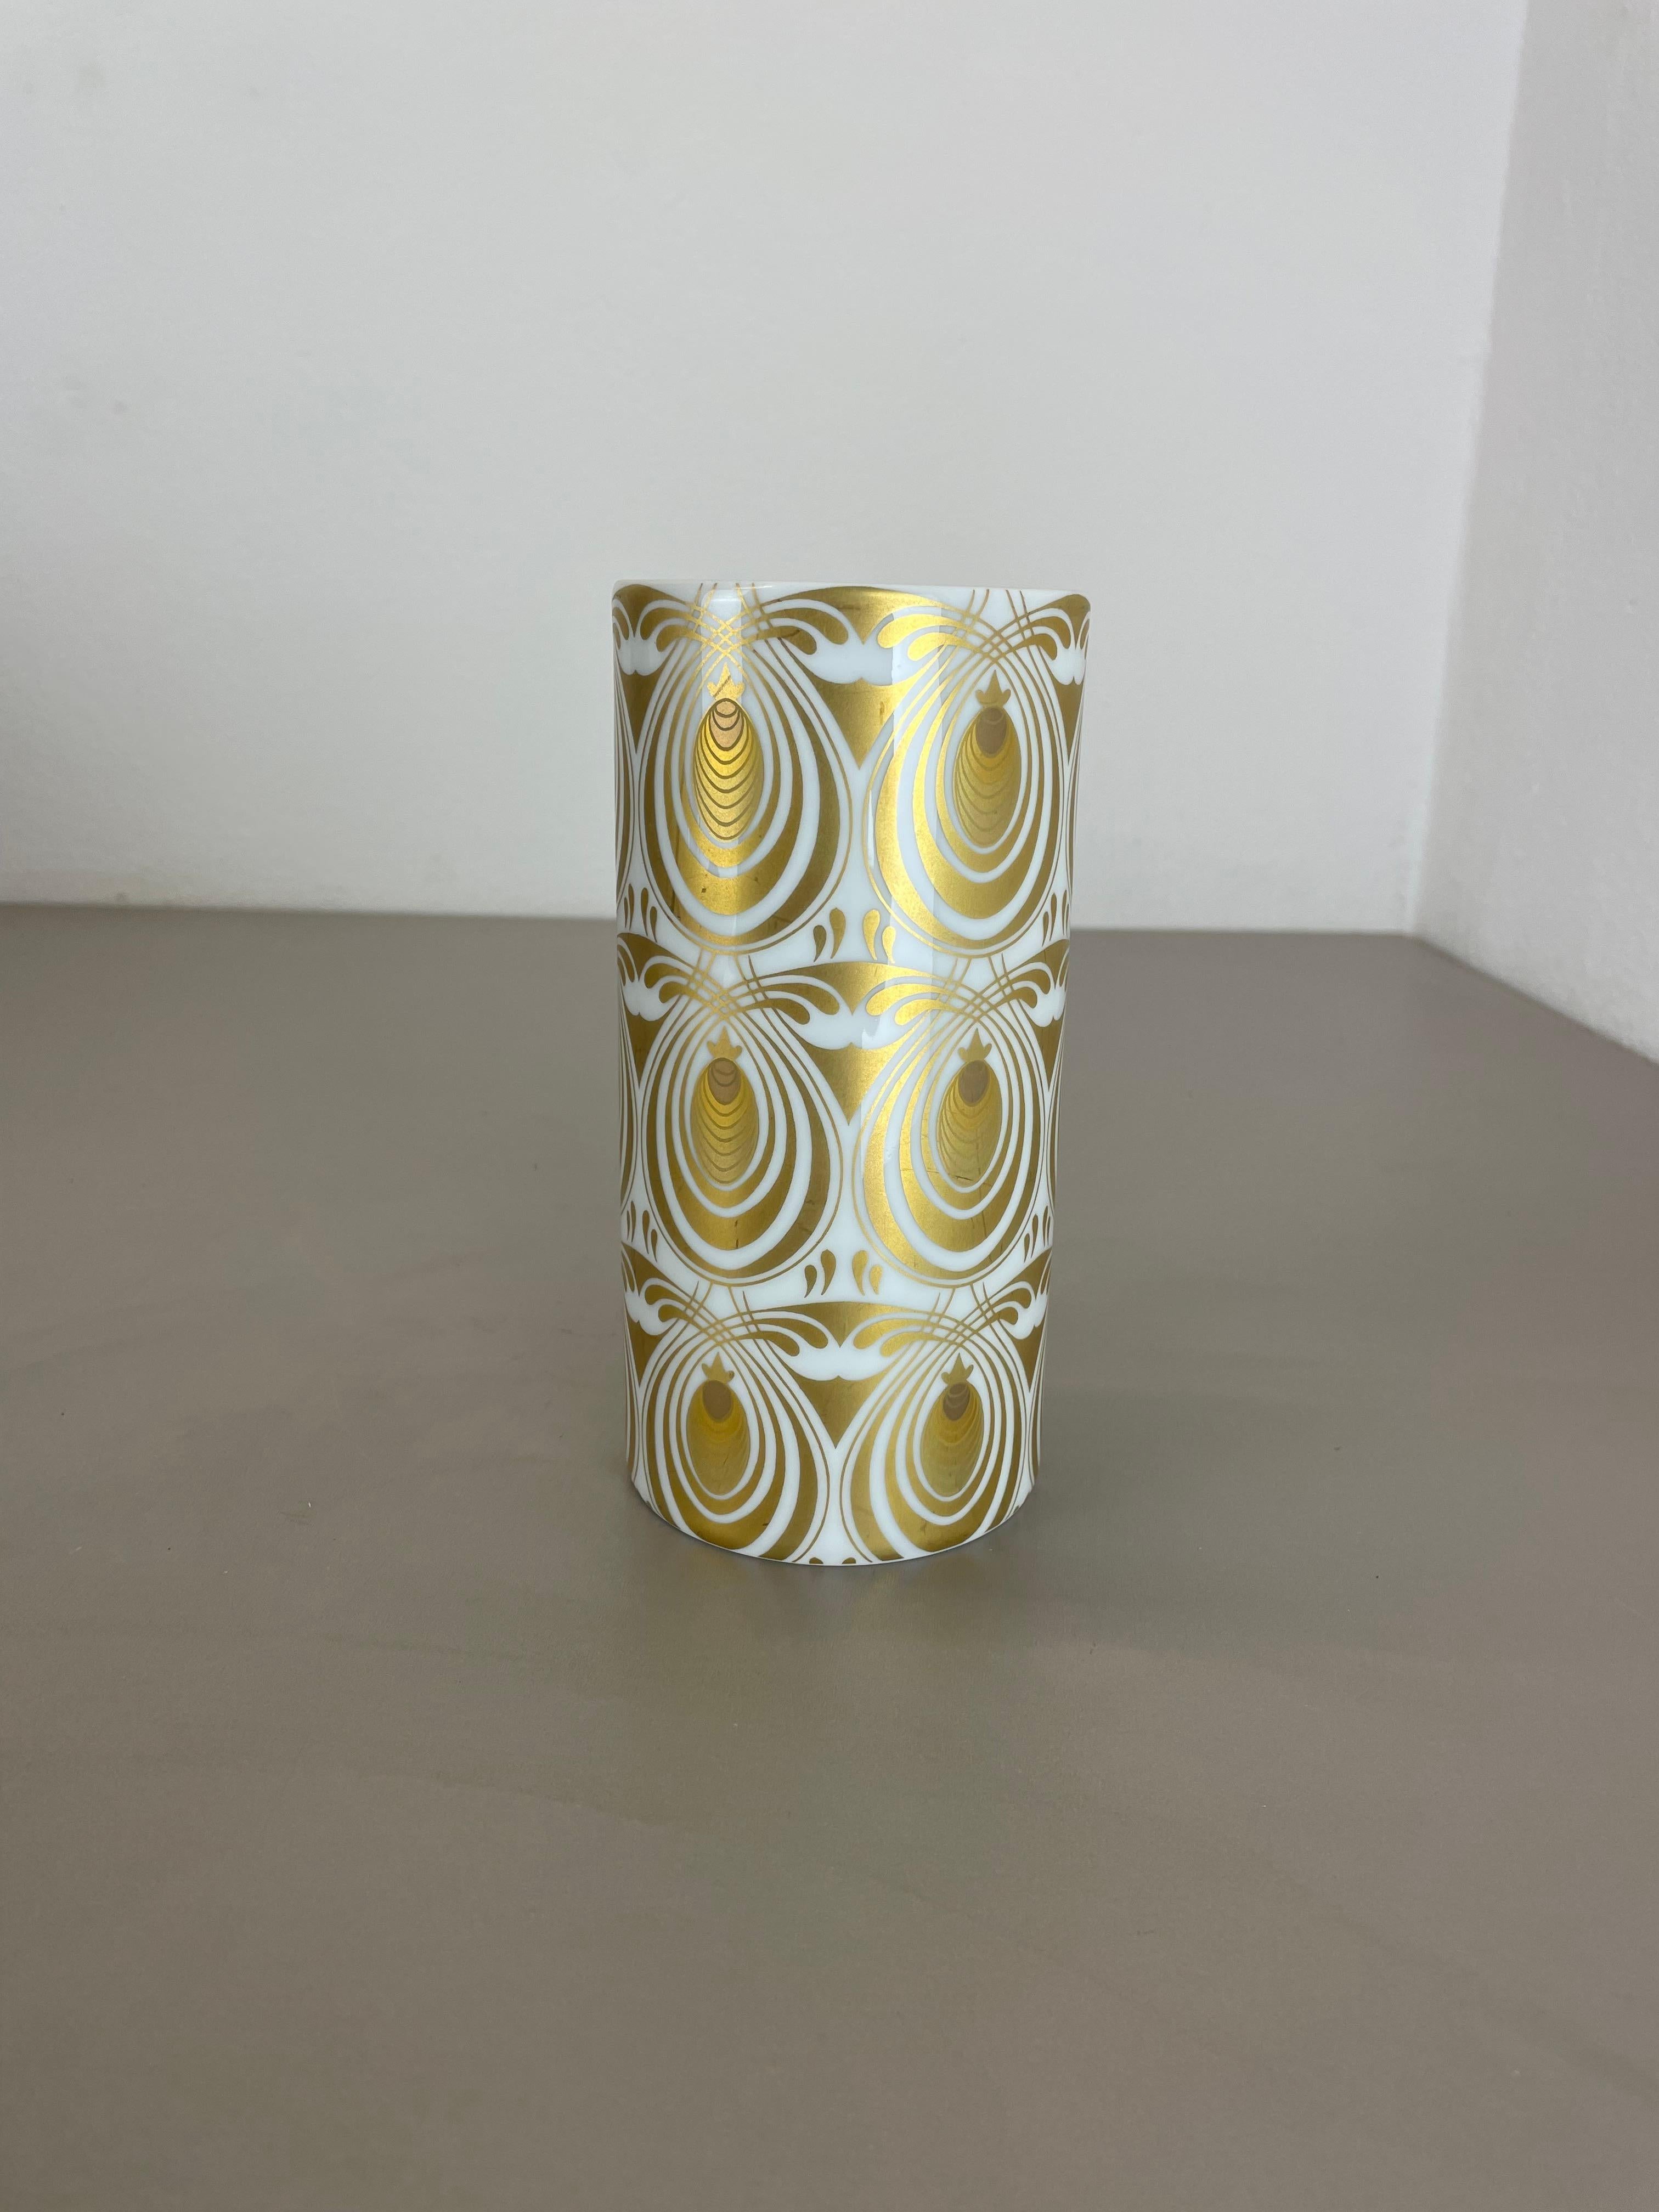 Artikel:

Op Art Porzellanvase


Produzent:

Rosenthal, Deutschland


Designer:

Björn Wiinblad



Jahrzehnt:

1970s





Diese originelle Vintage-Vase im Op-Art-Stil wurde in den 1970er Jahren in Deutschland von Rosenthal hergestellt. Sie ist aus